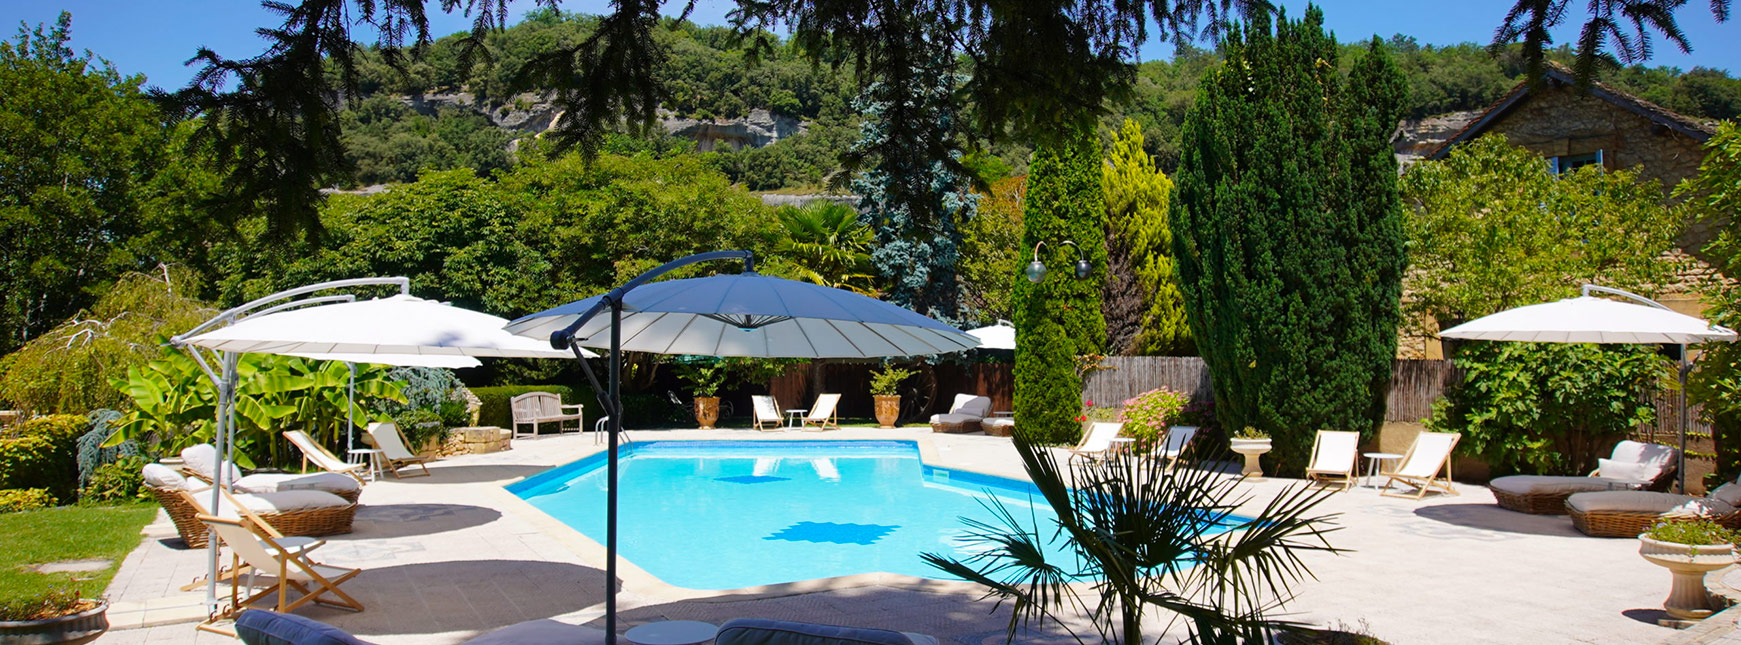 piscine Hôtel**** du Centenaire Les Eyzies Dordogne